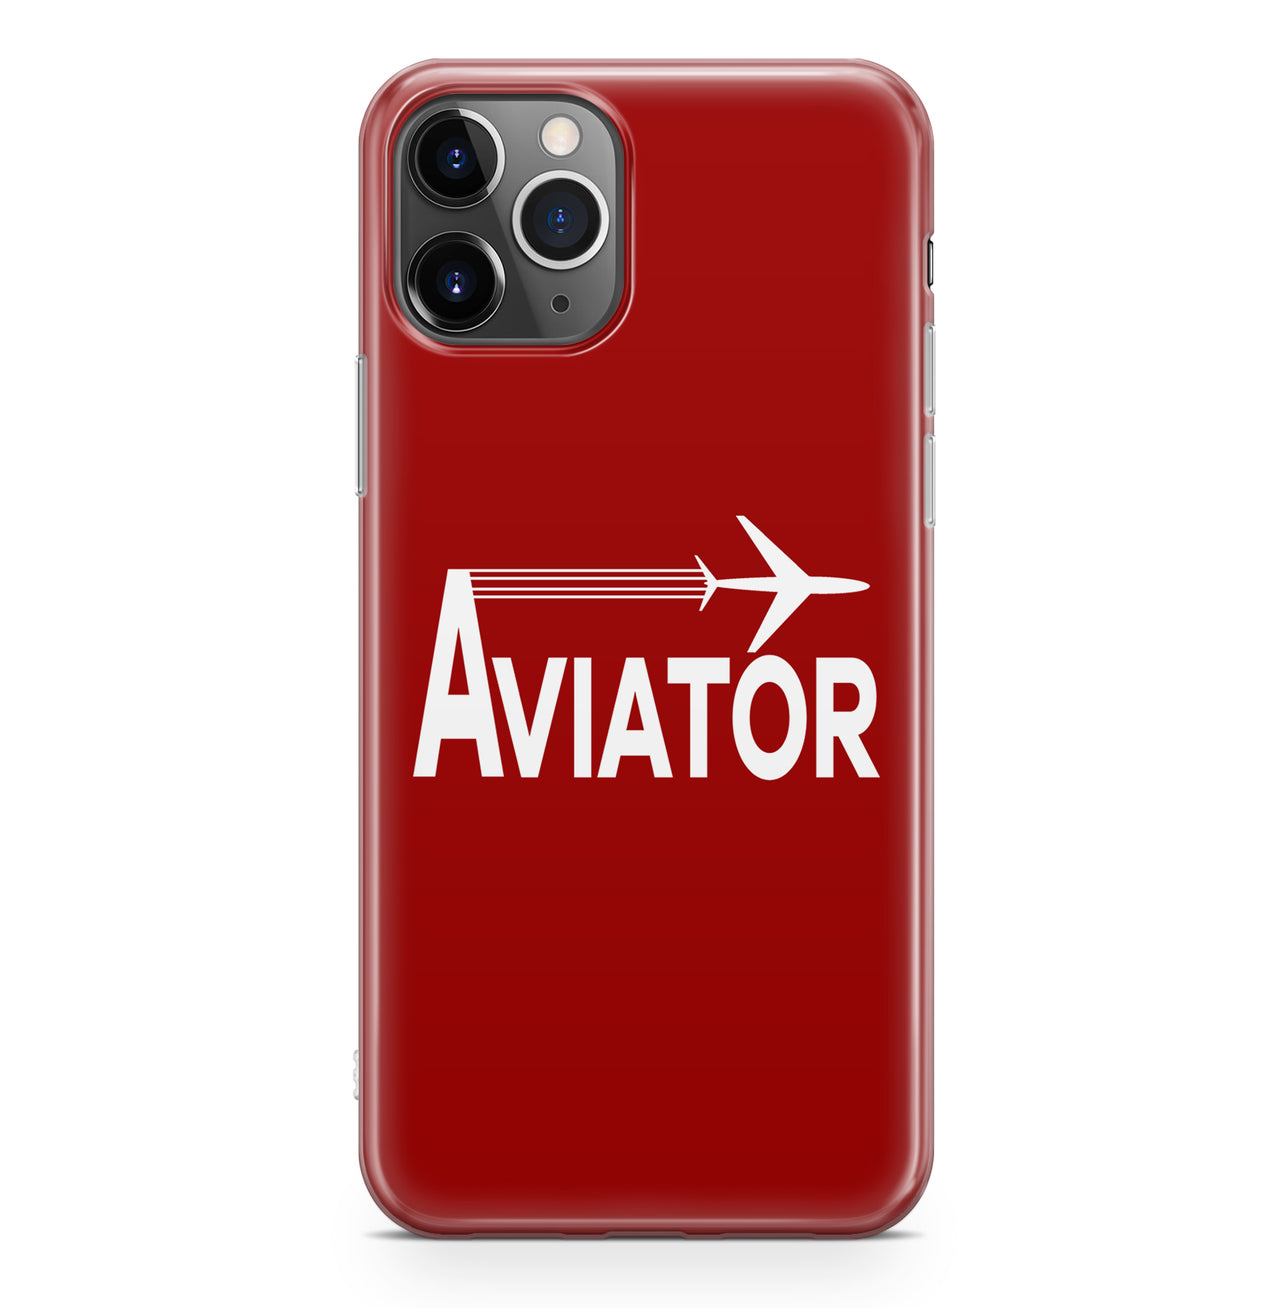 Aviator Designed iPhone Cases